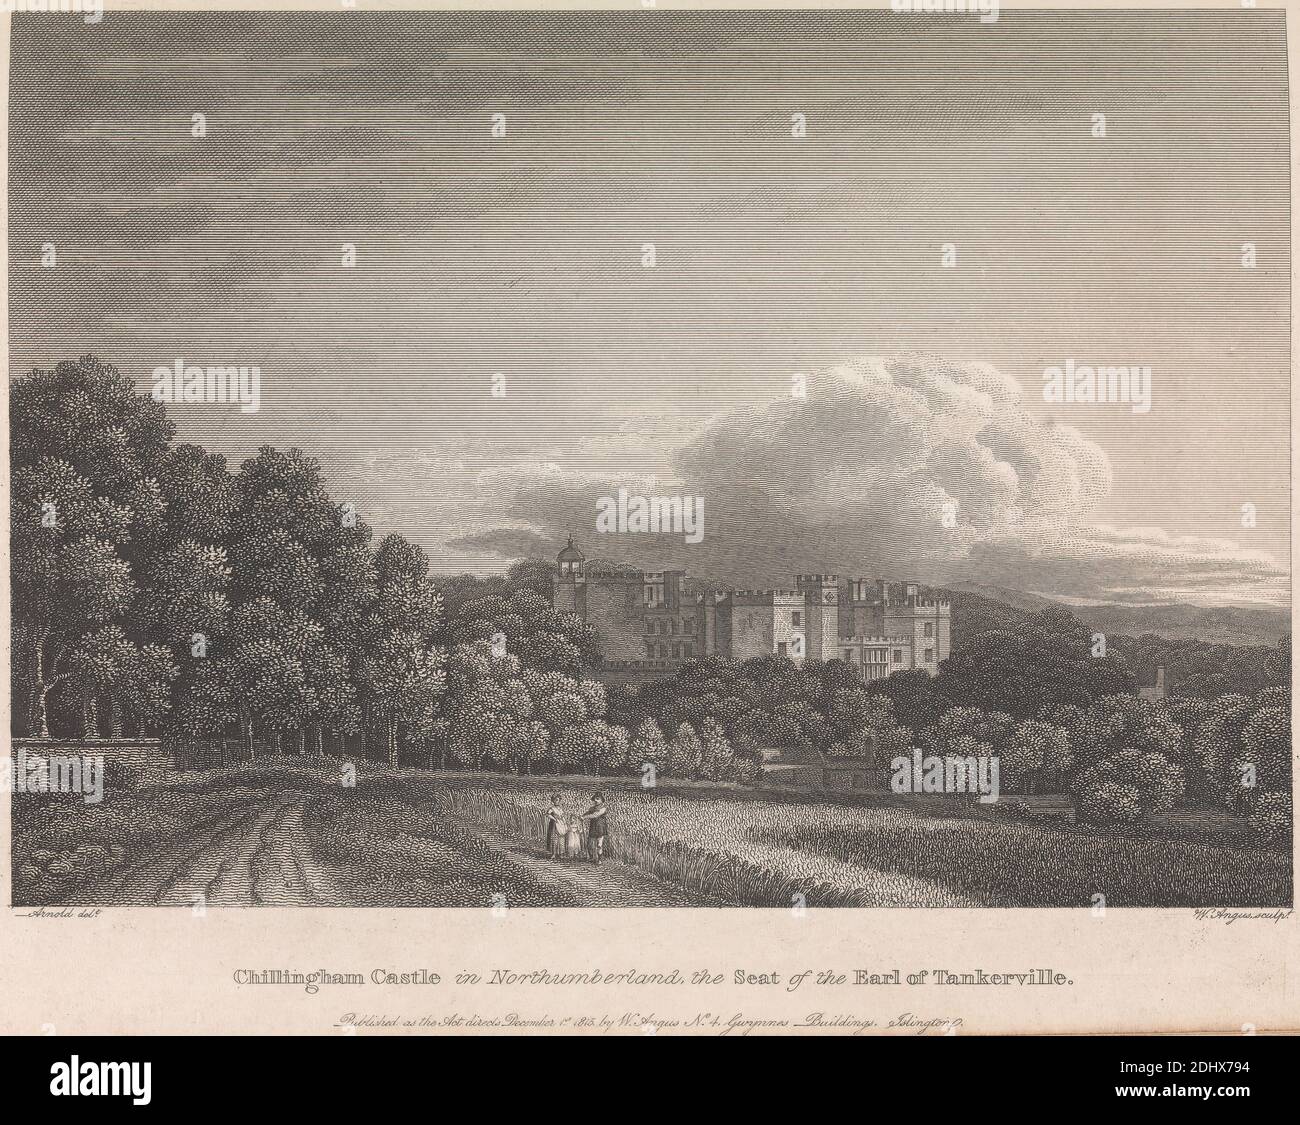 Chilingham Castle in Northumberland, la sede del conte di Tankerville (pubblicato da W. Angus): Plate 62; page 62 (Volume One), William Angus, 1752–1821, britannico, dopo artista sconosciuto, ( Arnold ), non datato Foto Stock